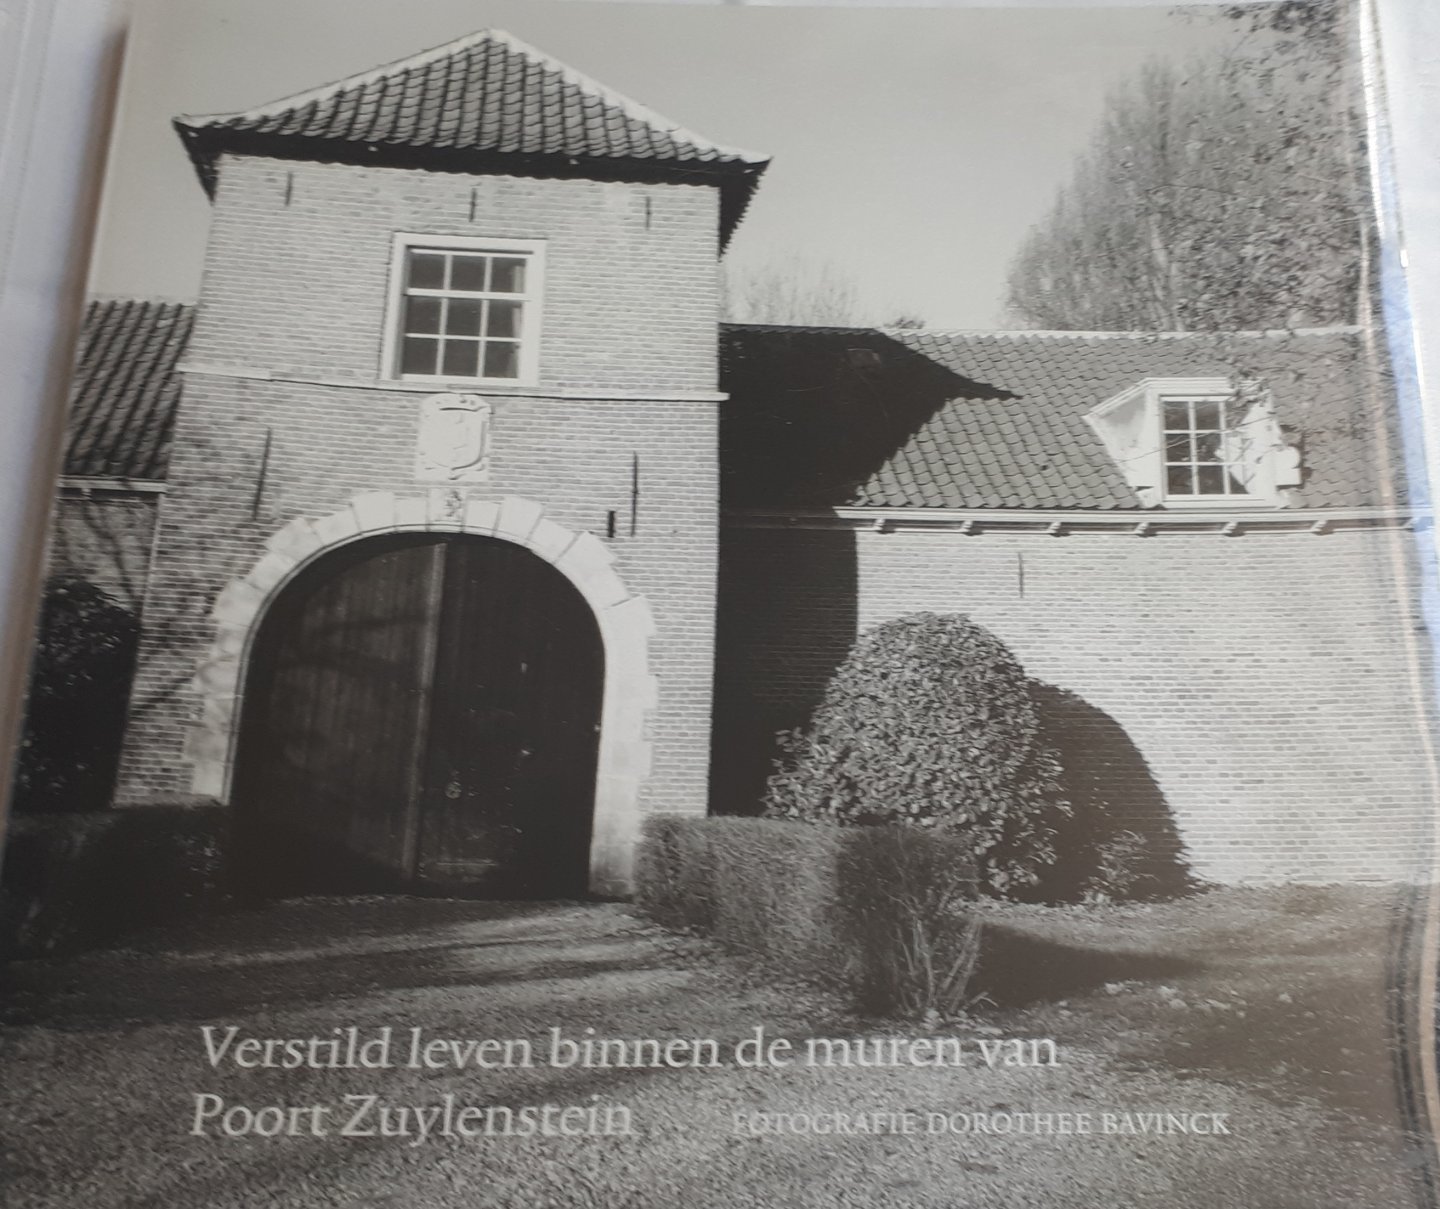 BAVINCK, Dorothee (fotografie) - Verstild leven binnen de muren van Poort Zuylestein